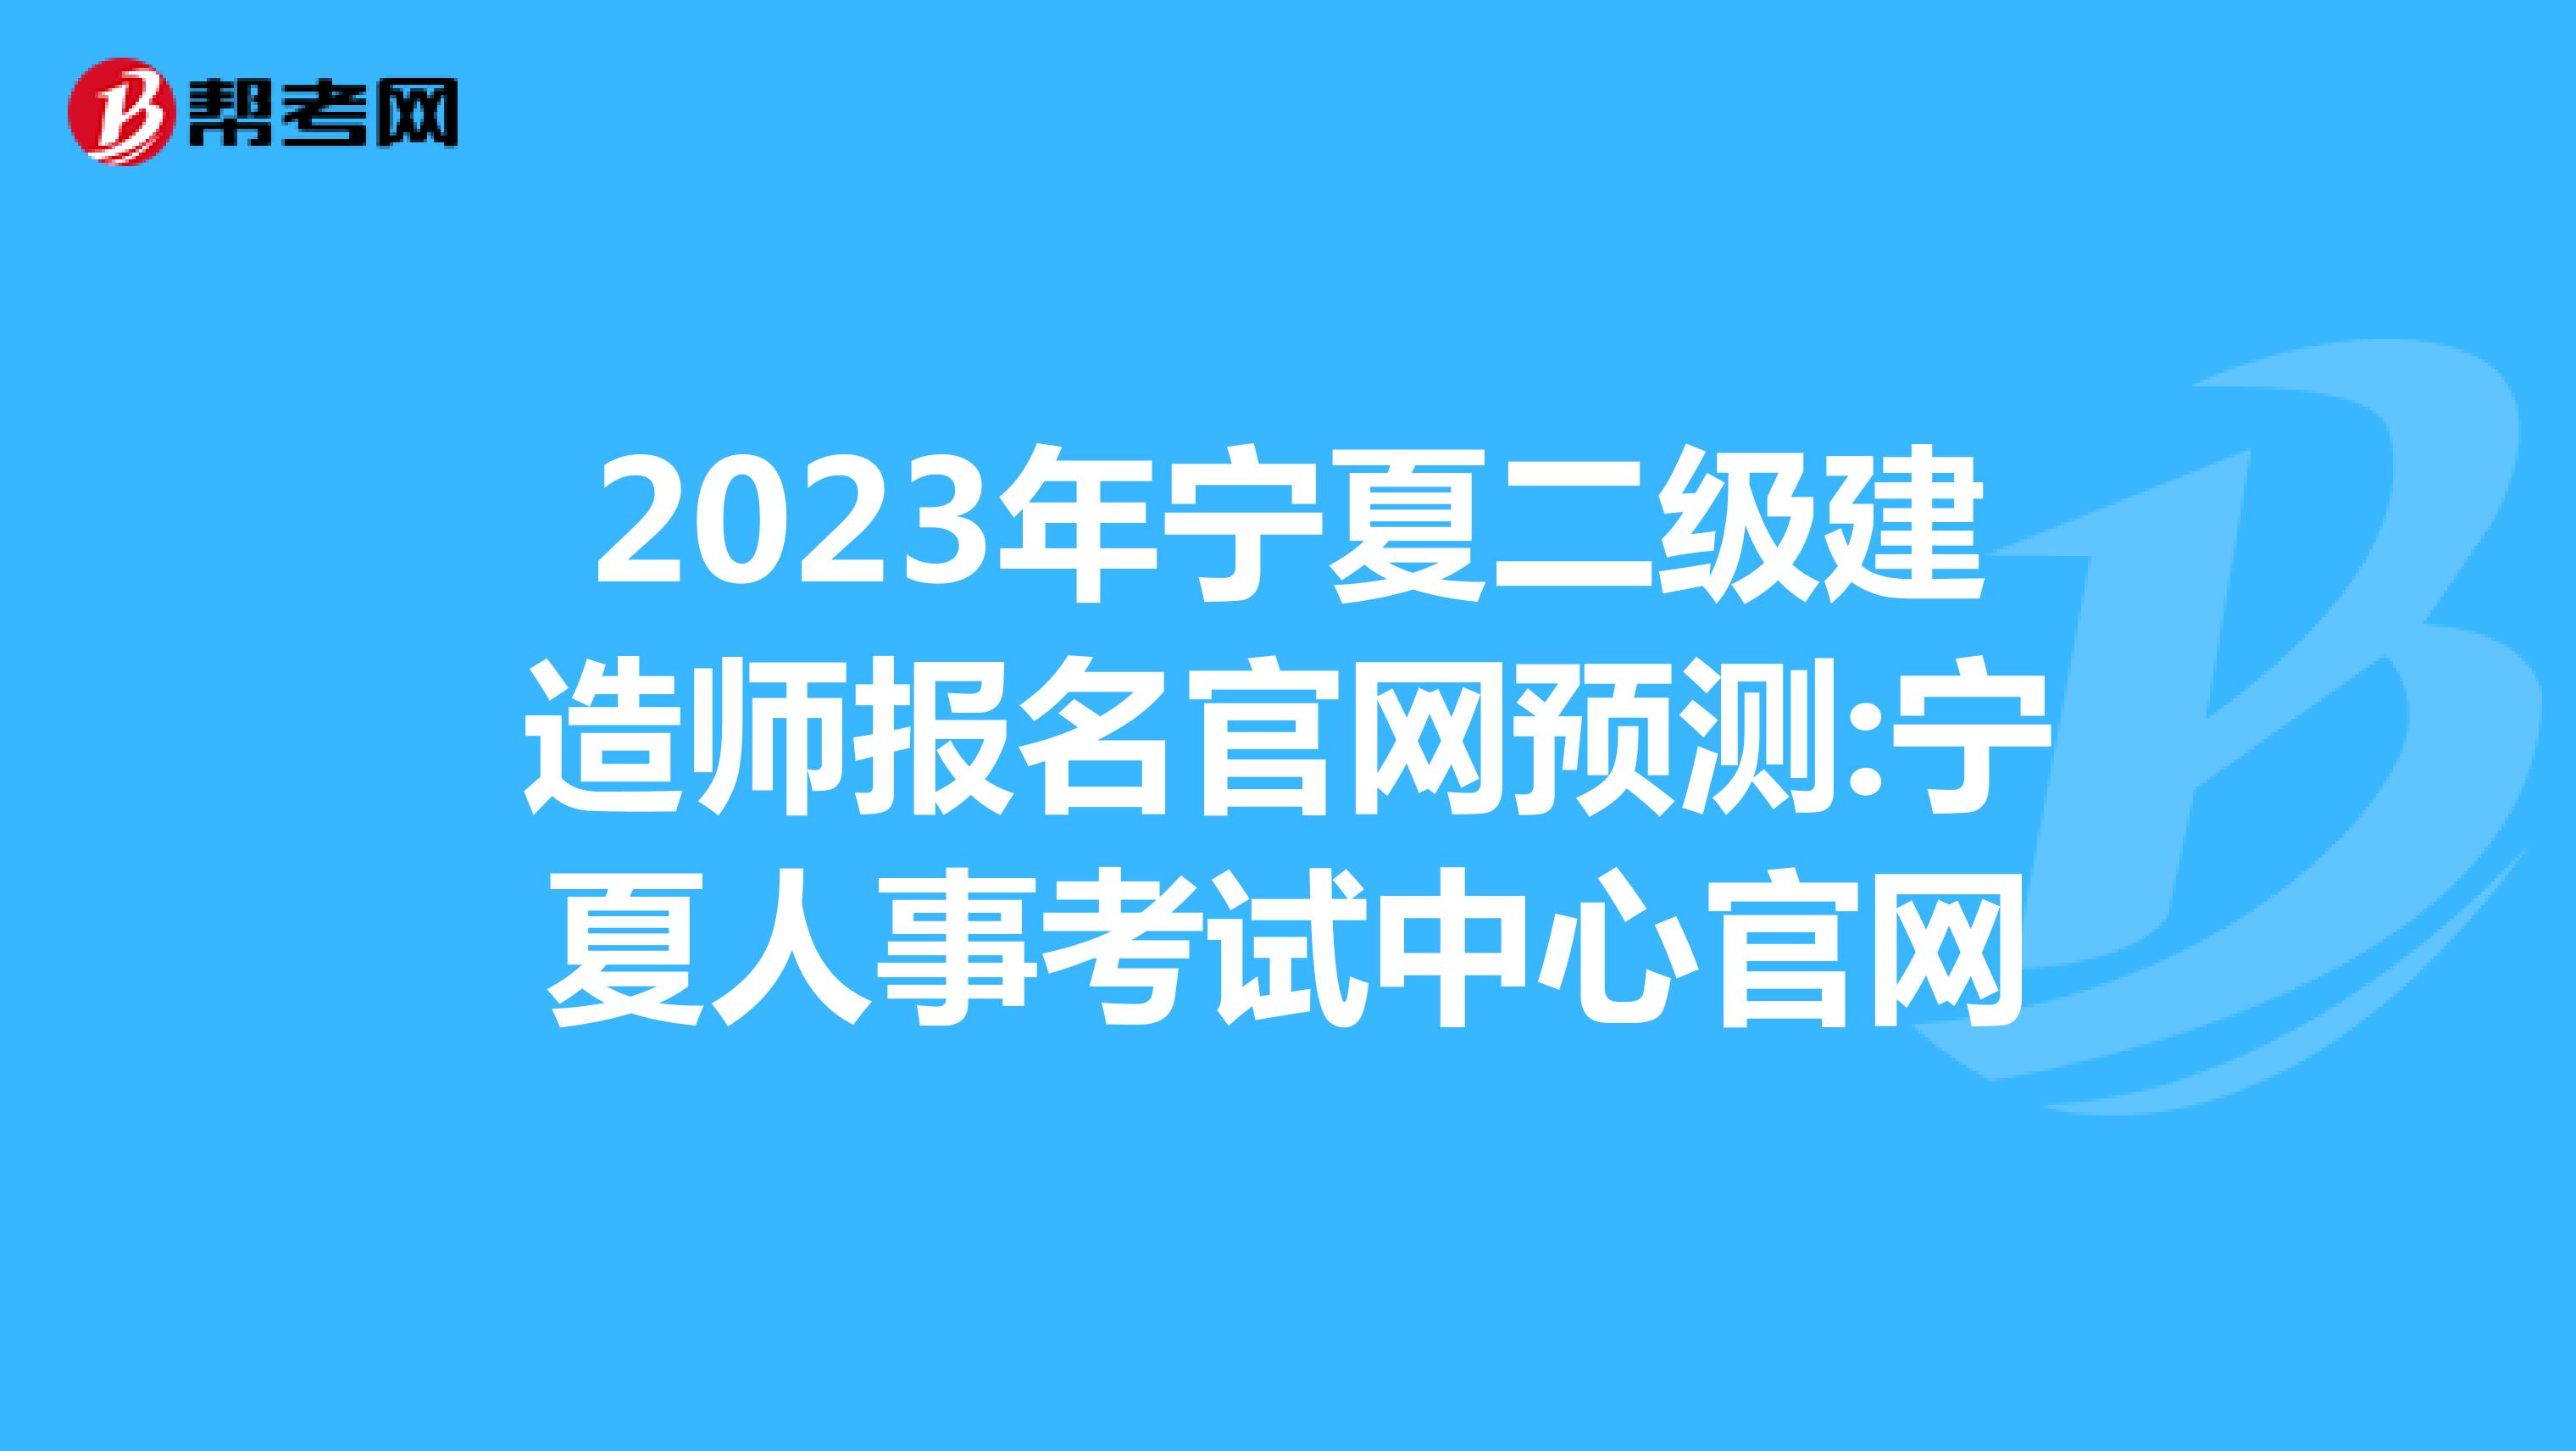 2023年宁夏二级建造师报名官网预测:宁夏人事考试中心官网